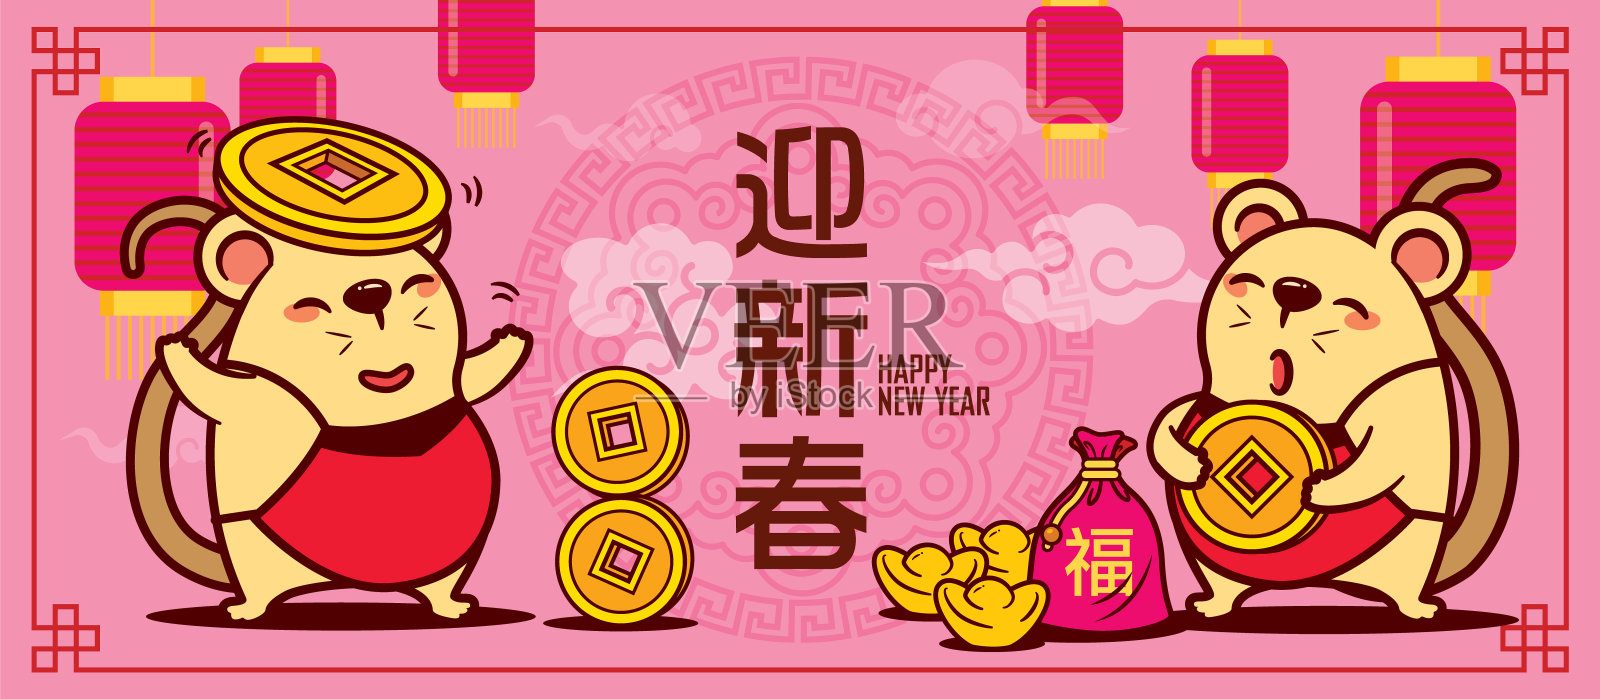 可爱的老鼠扛着金元宝，用粉红色的装饰背景写着汉字迎接新年设计模板素材